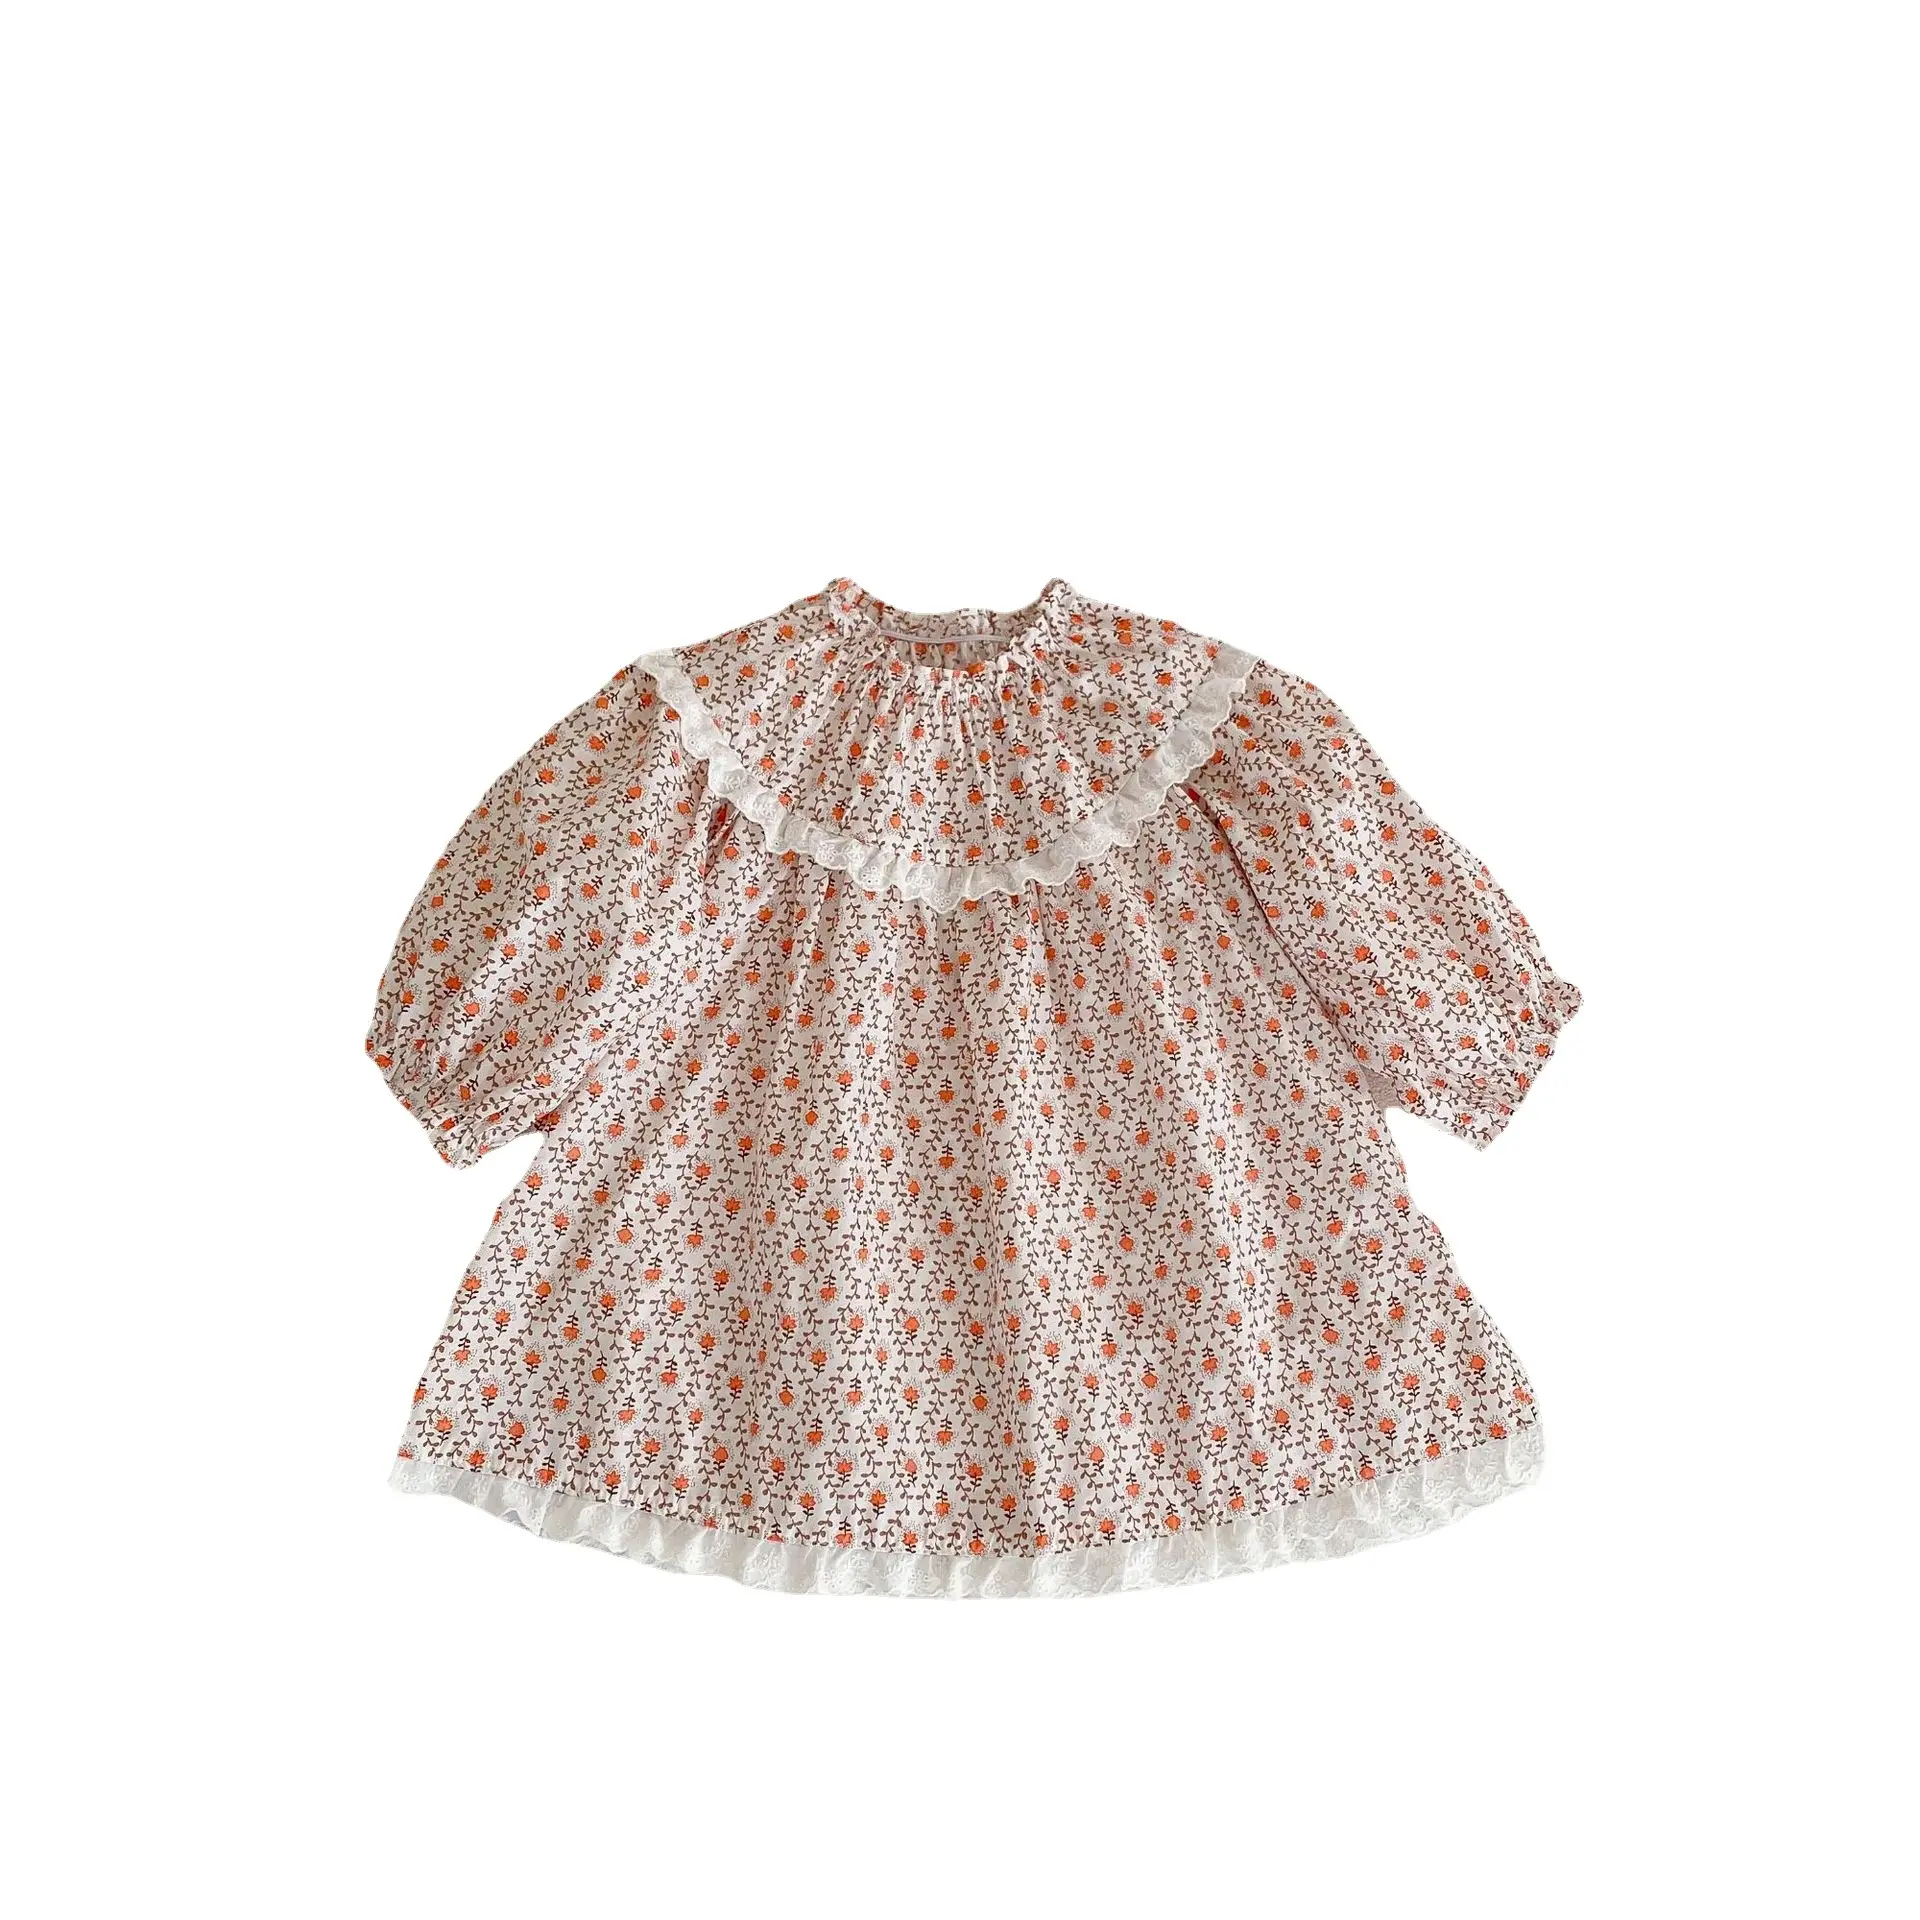 Sonbahar bebek bebek kız kardeş elbise baskılı uzun kollu etek ve mantar yaka dantel Romper